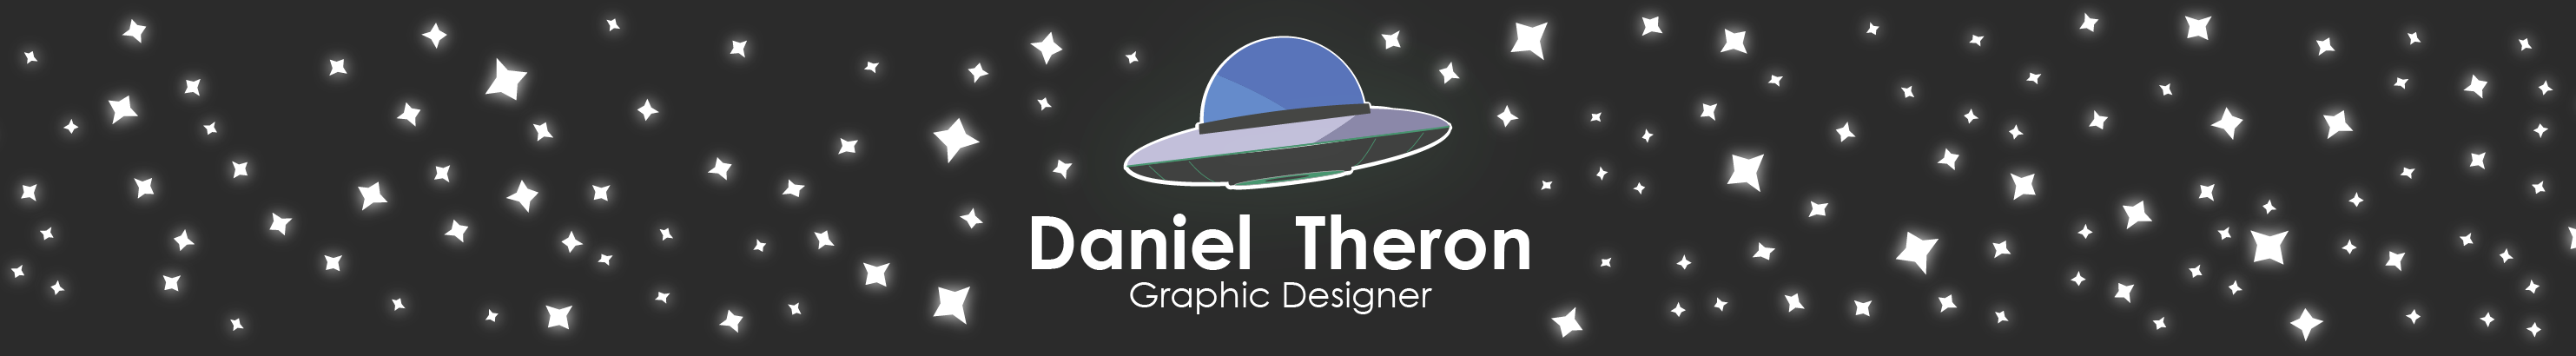 Profil-Banner von Daniel Theron